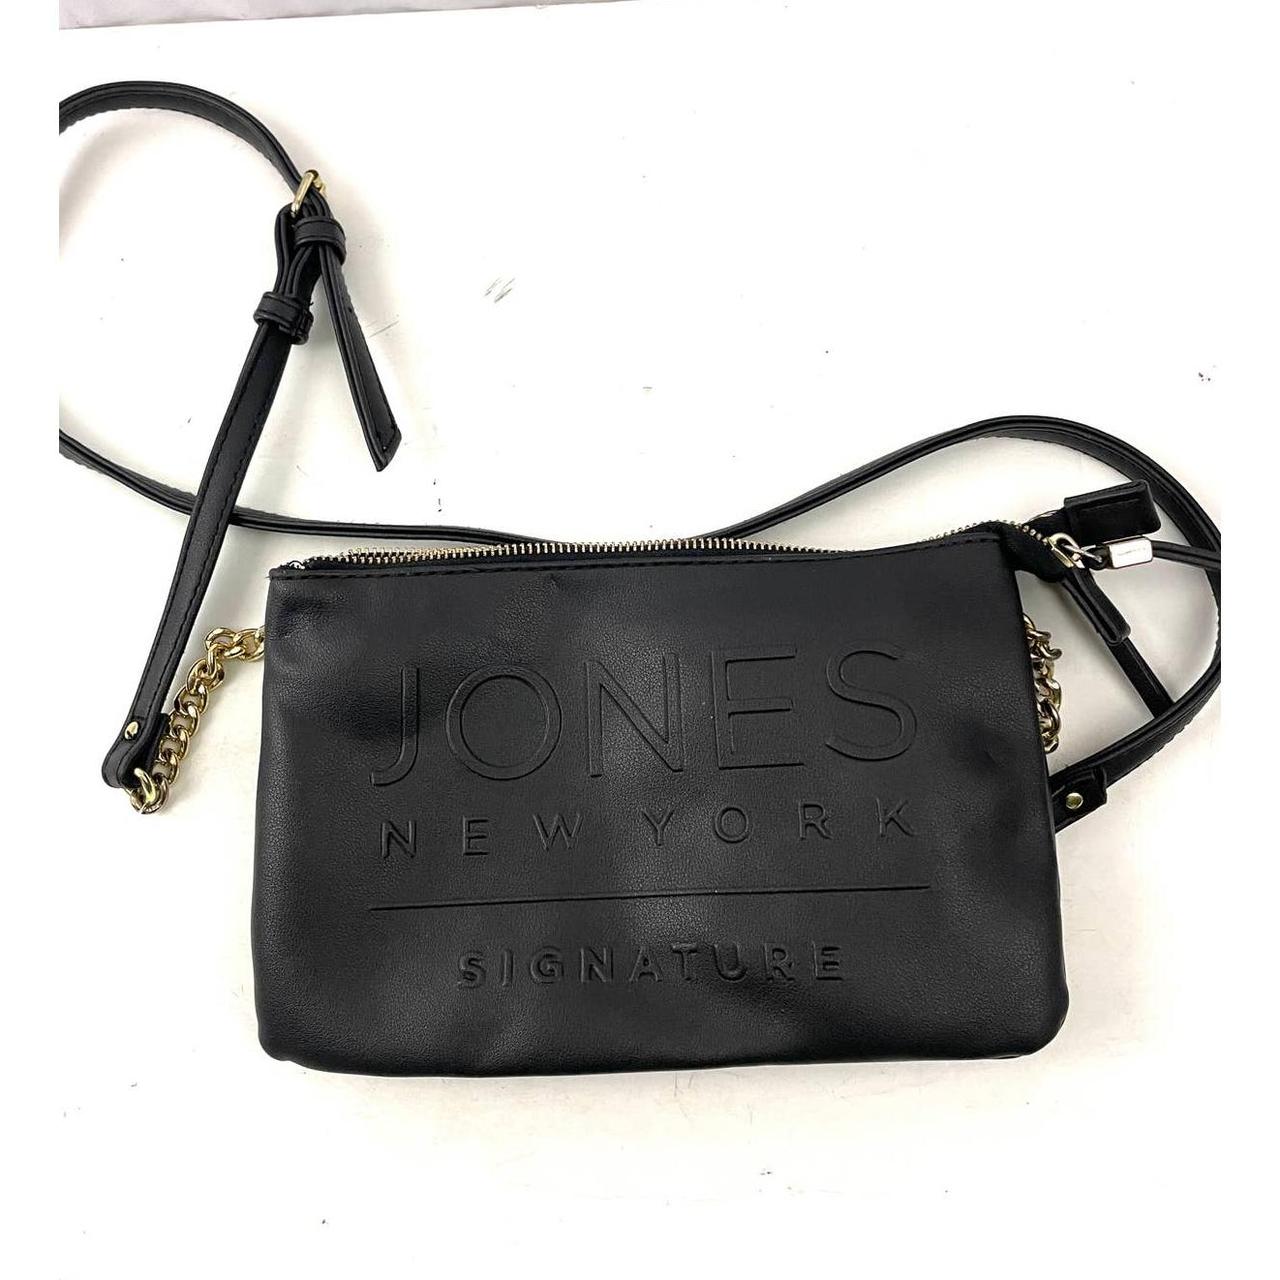 Buy Jones New York Signature Women's Tote Bag (Slate) at Amazon.in